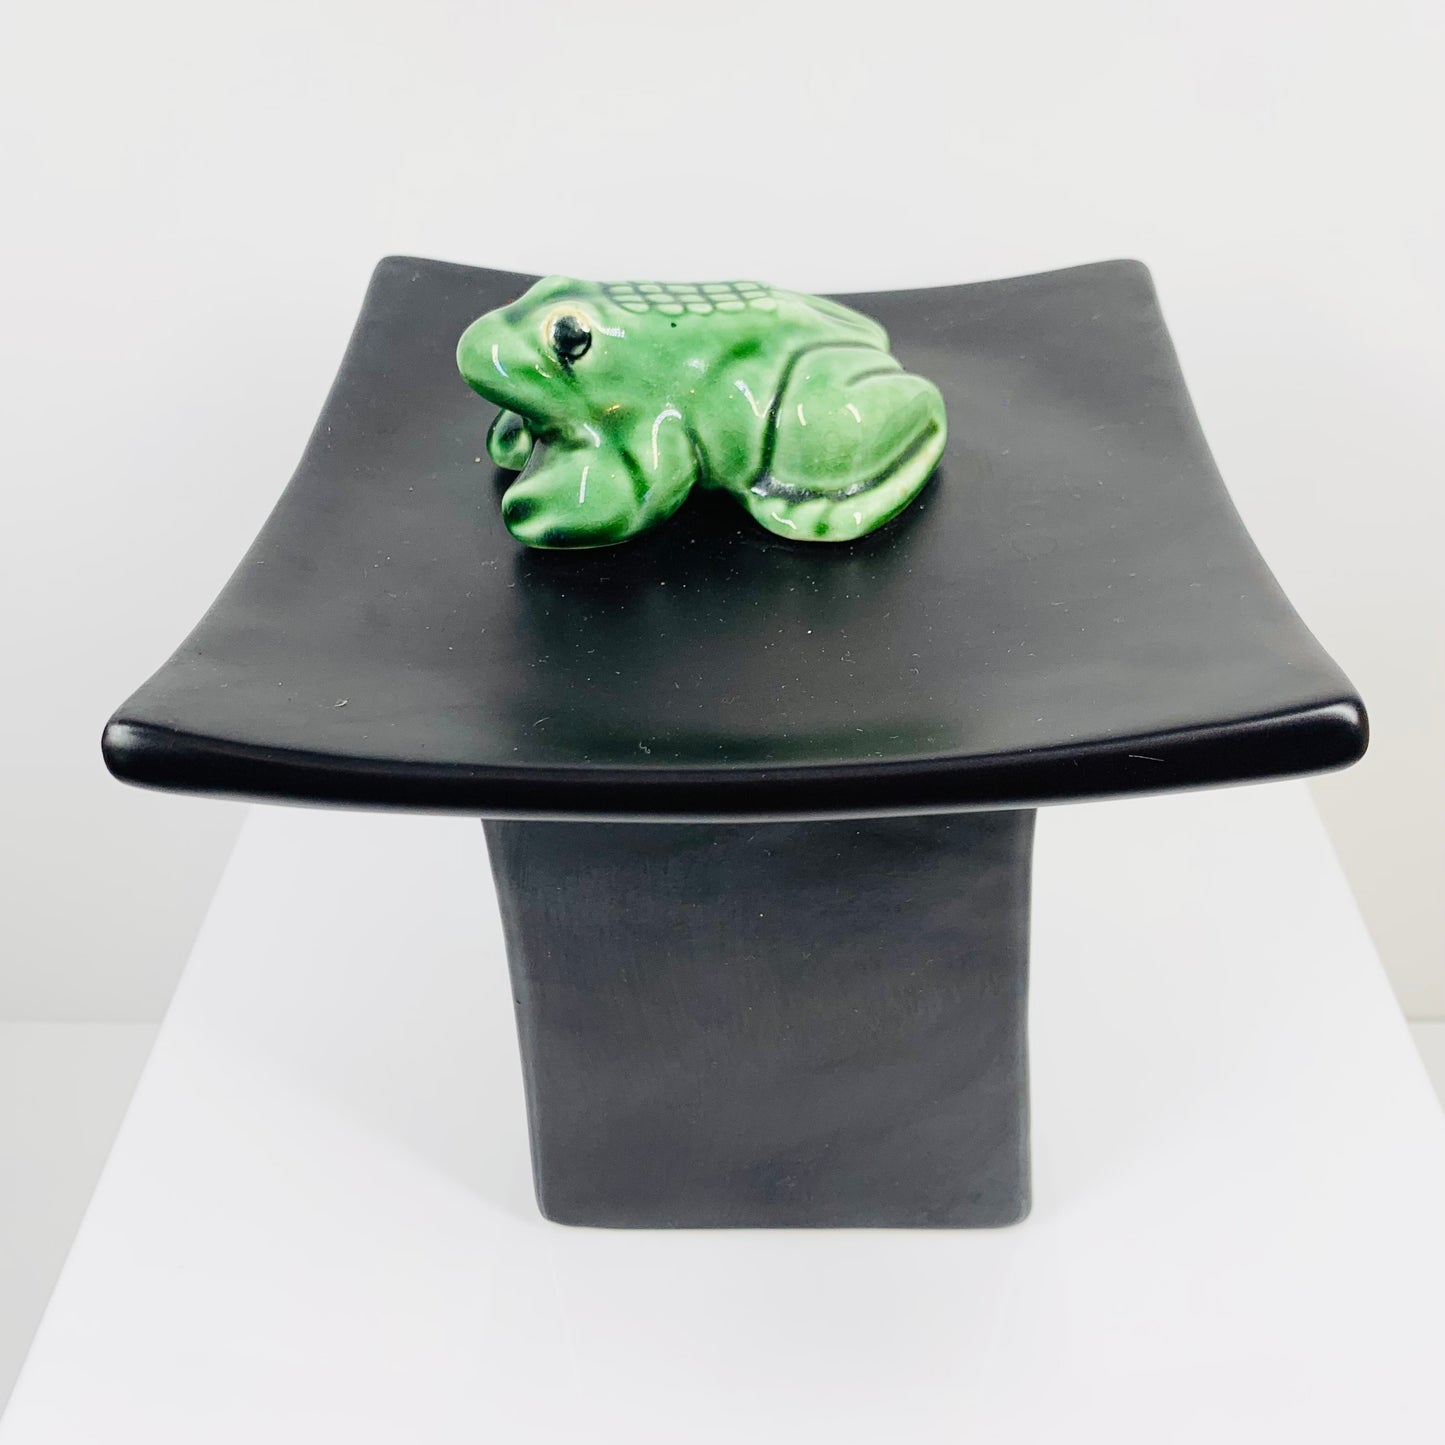 Vintage black porcelain with green frog ikebana vessel